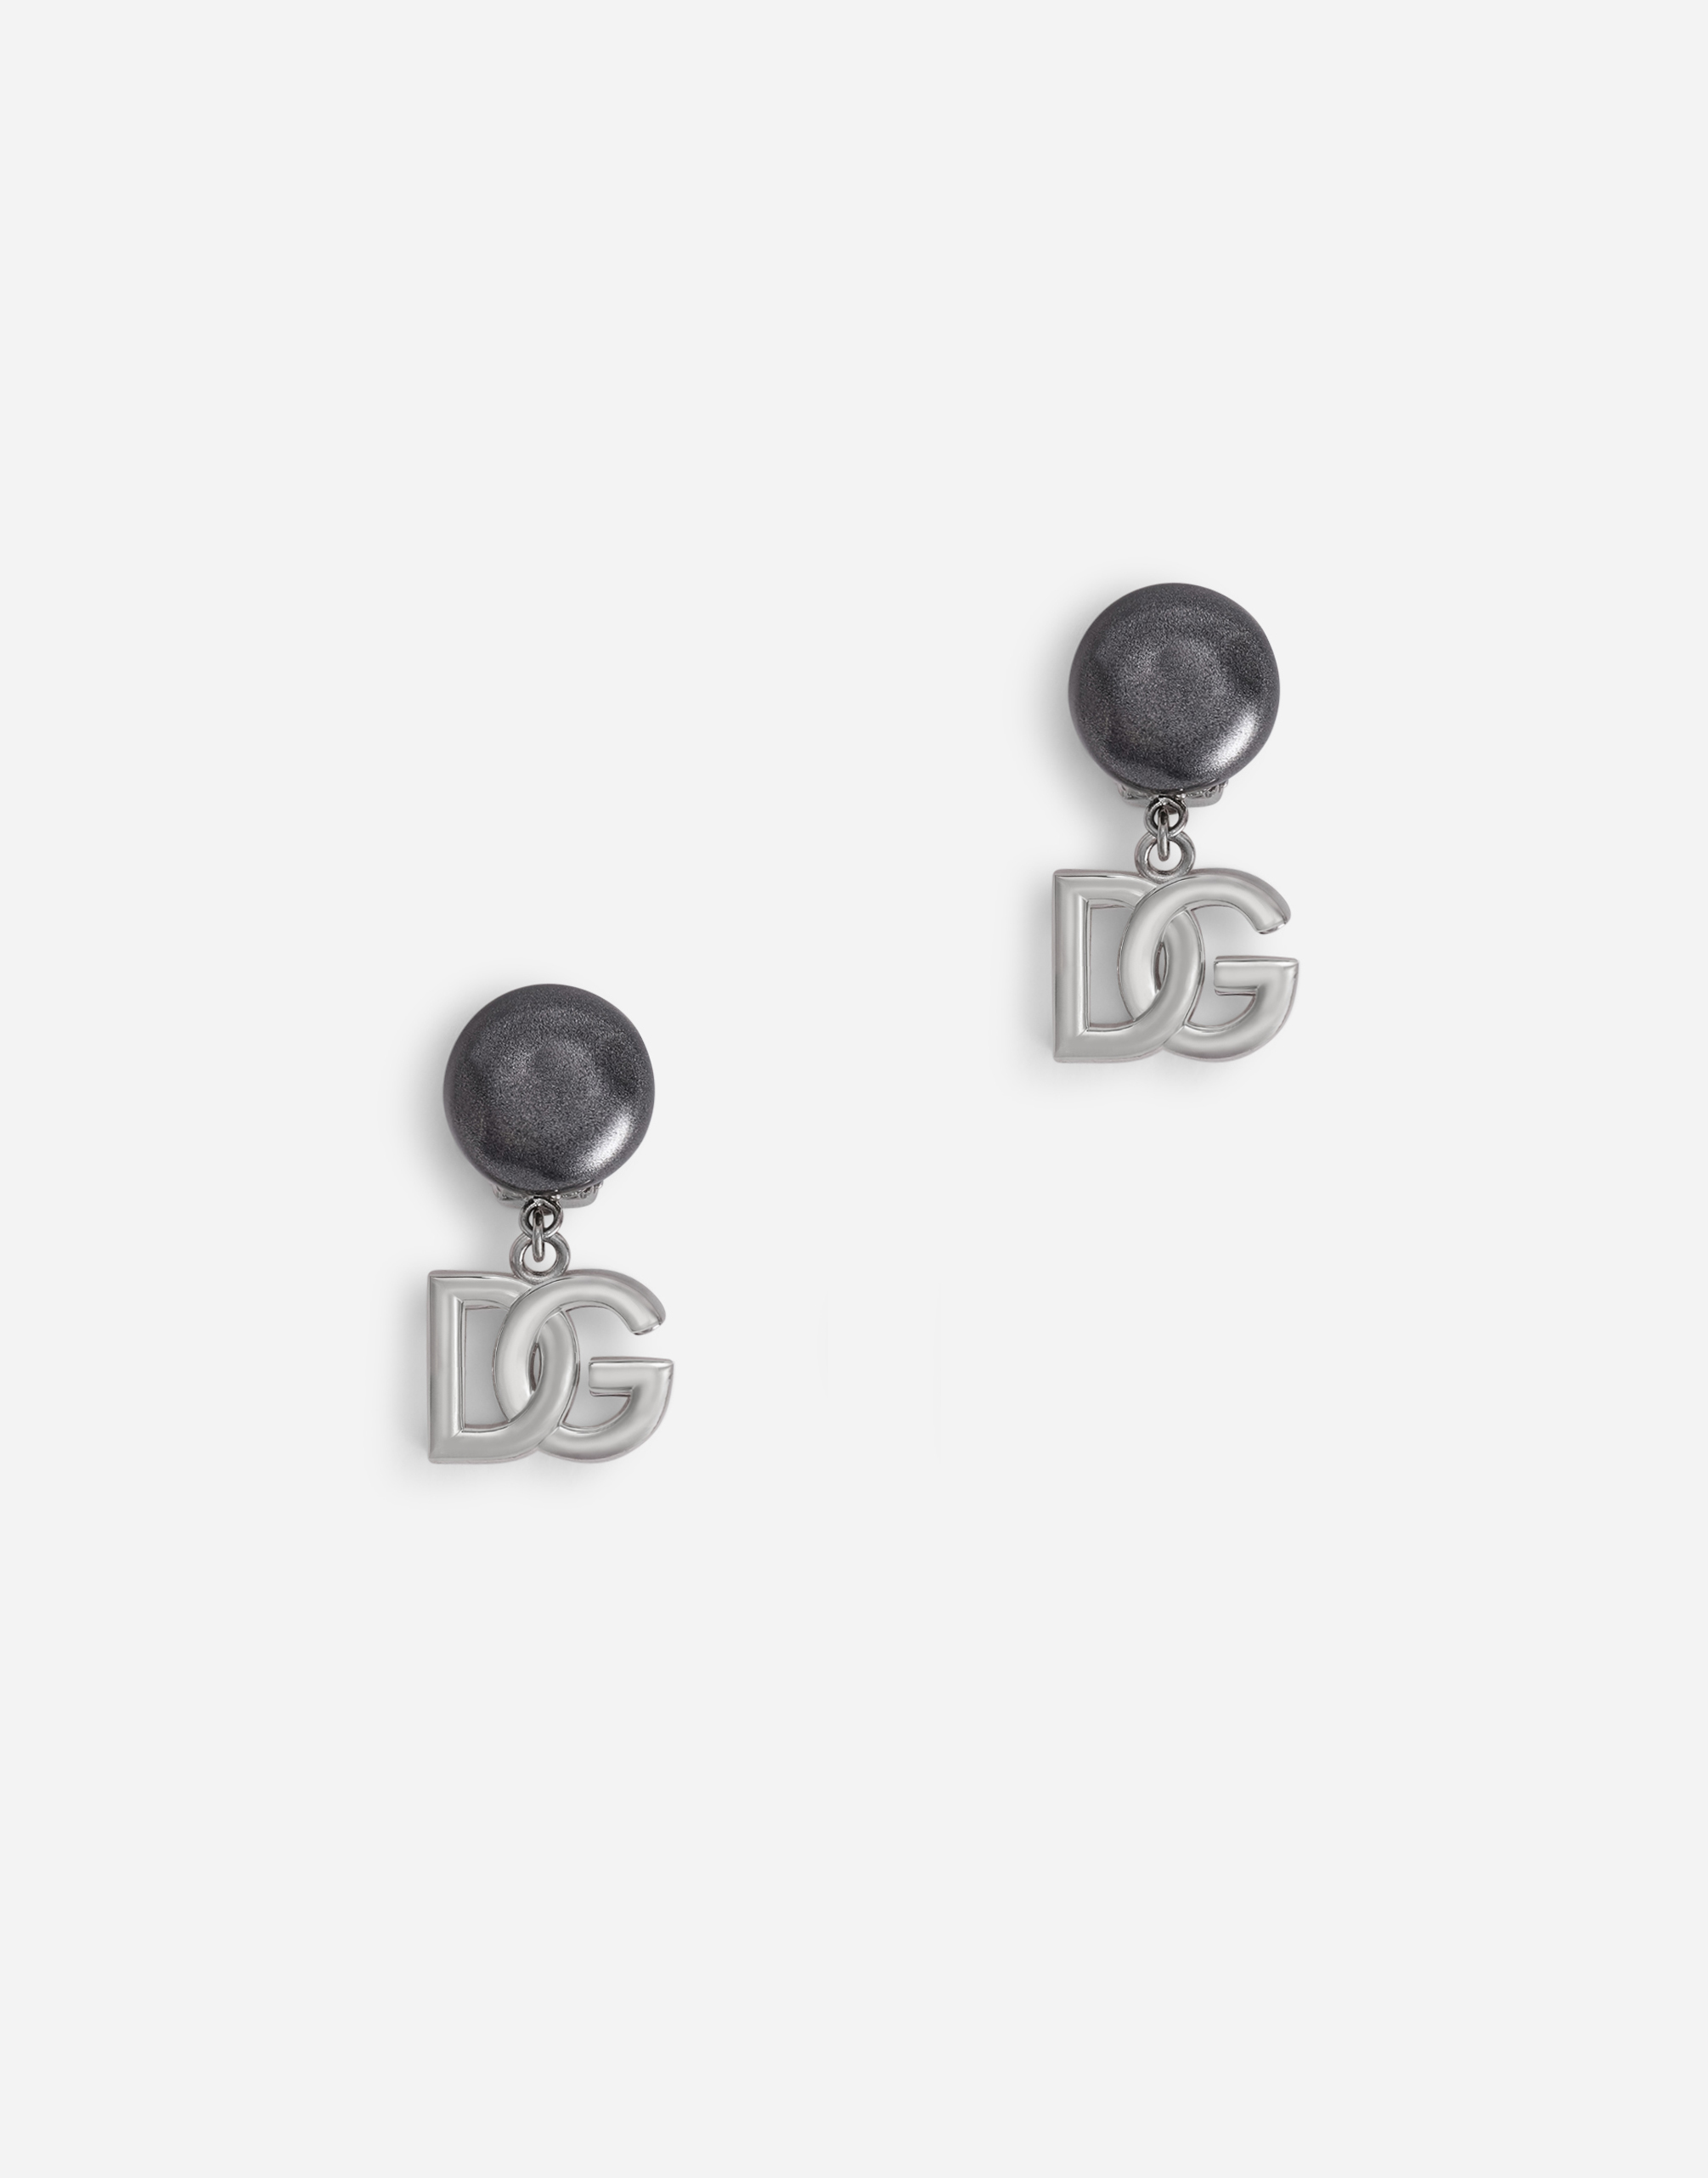 Clip-on earrings with DG logo pendants in Silver